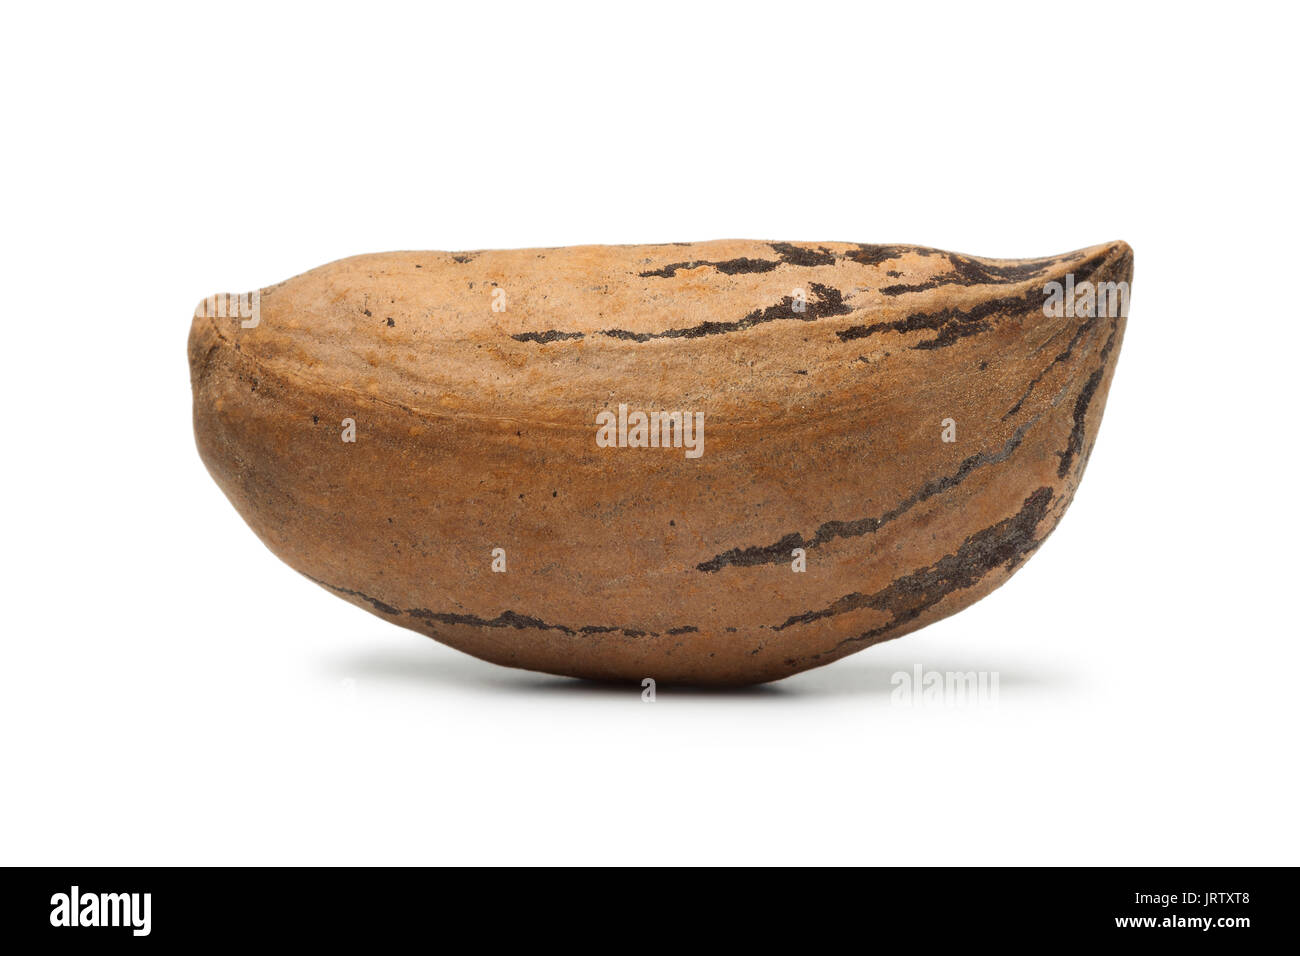 Single organic unshelled pecan nut on white background Stock Photo